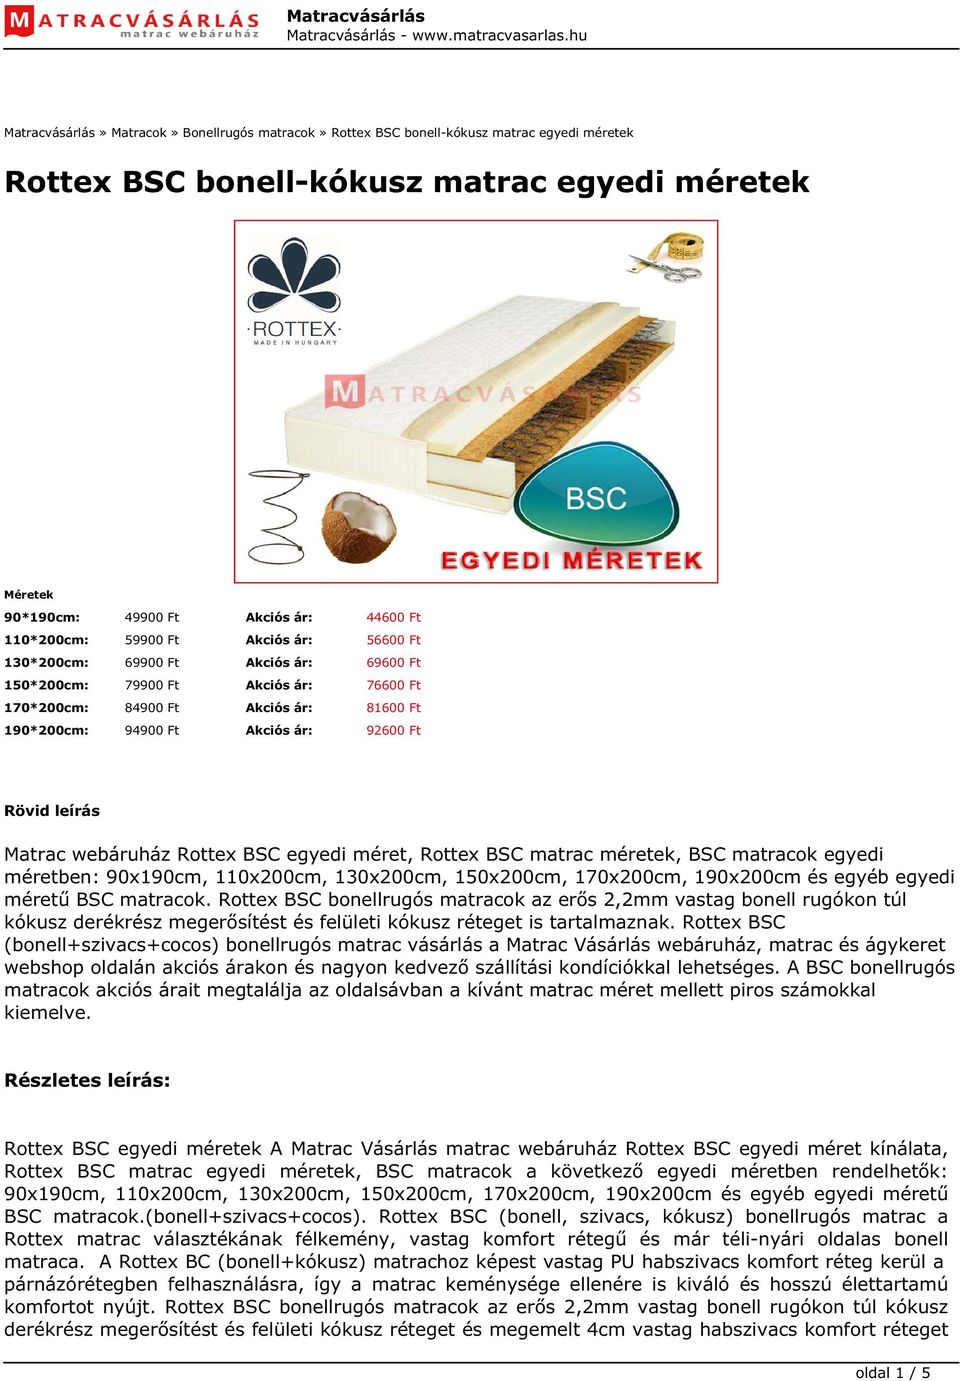 Rottex BSC bonell-kókusz matrac egyedi méretek - PDF Ingyenes letöltés